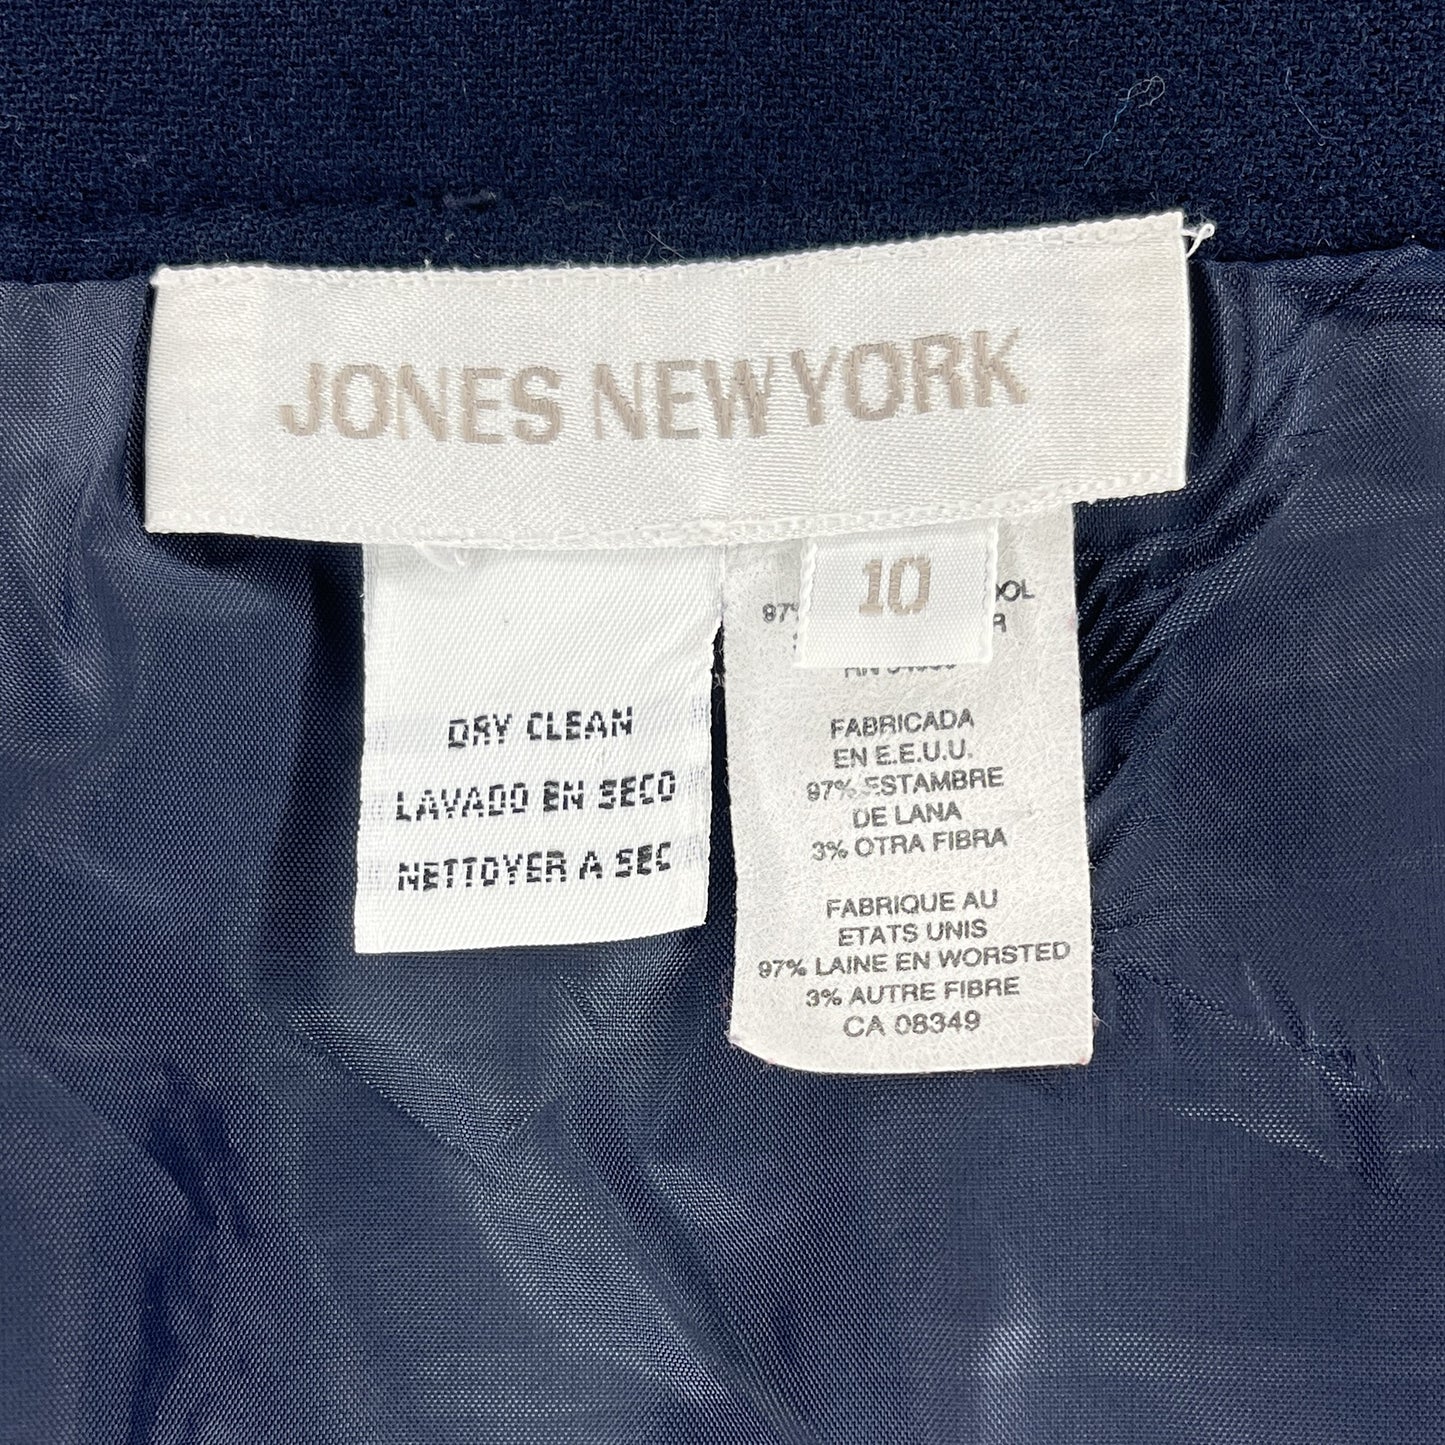 Jones New York Skirt Below-Knee Navy Size 10 SKU 000417